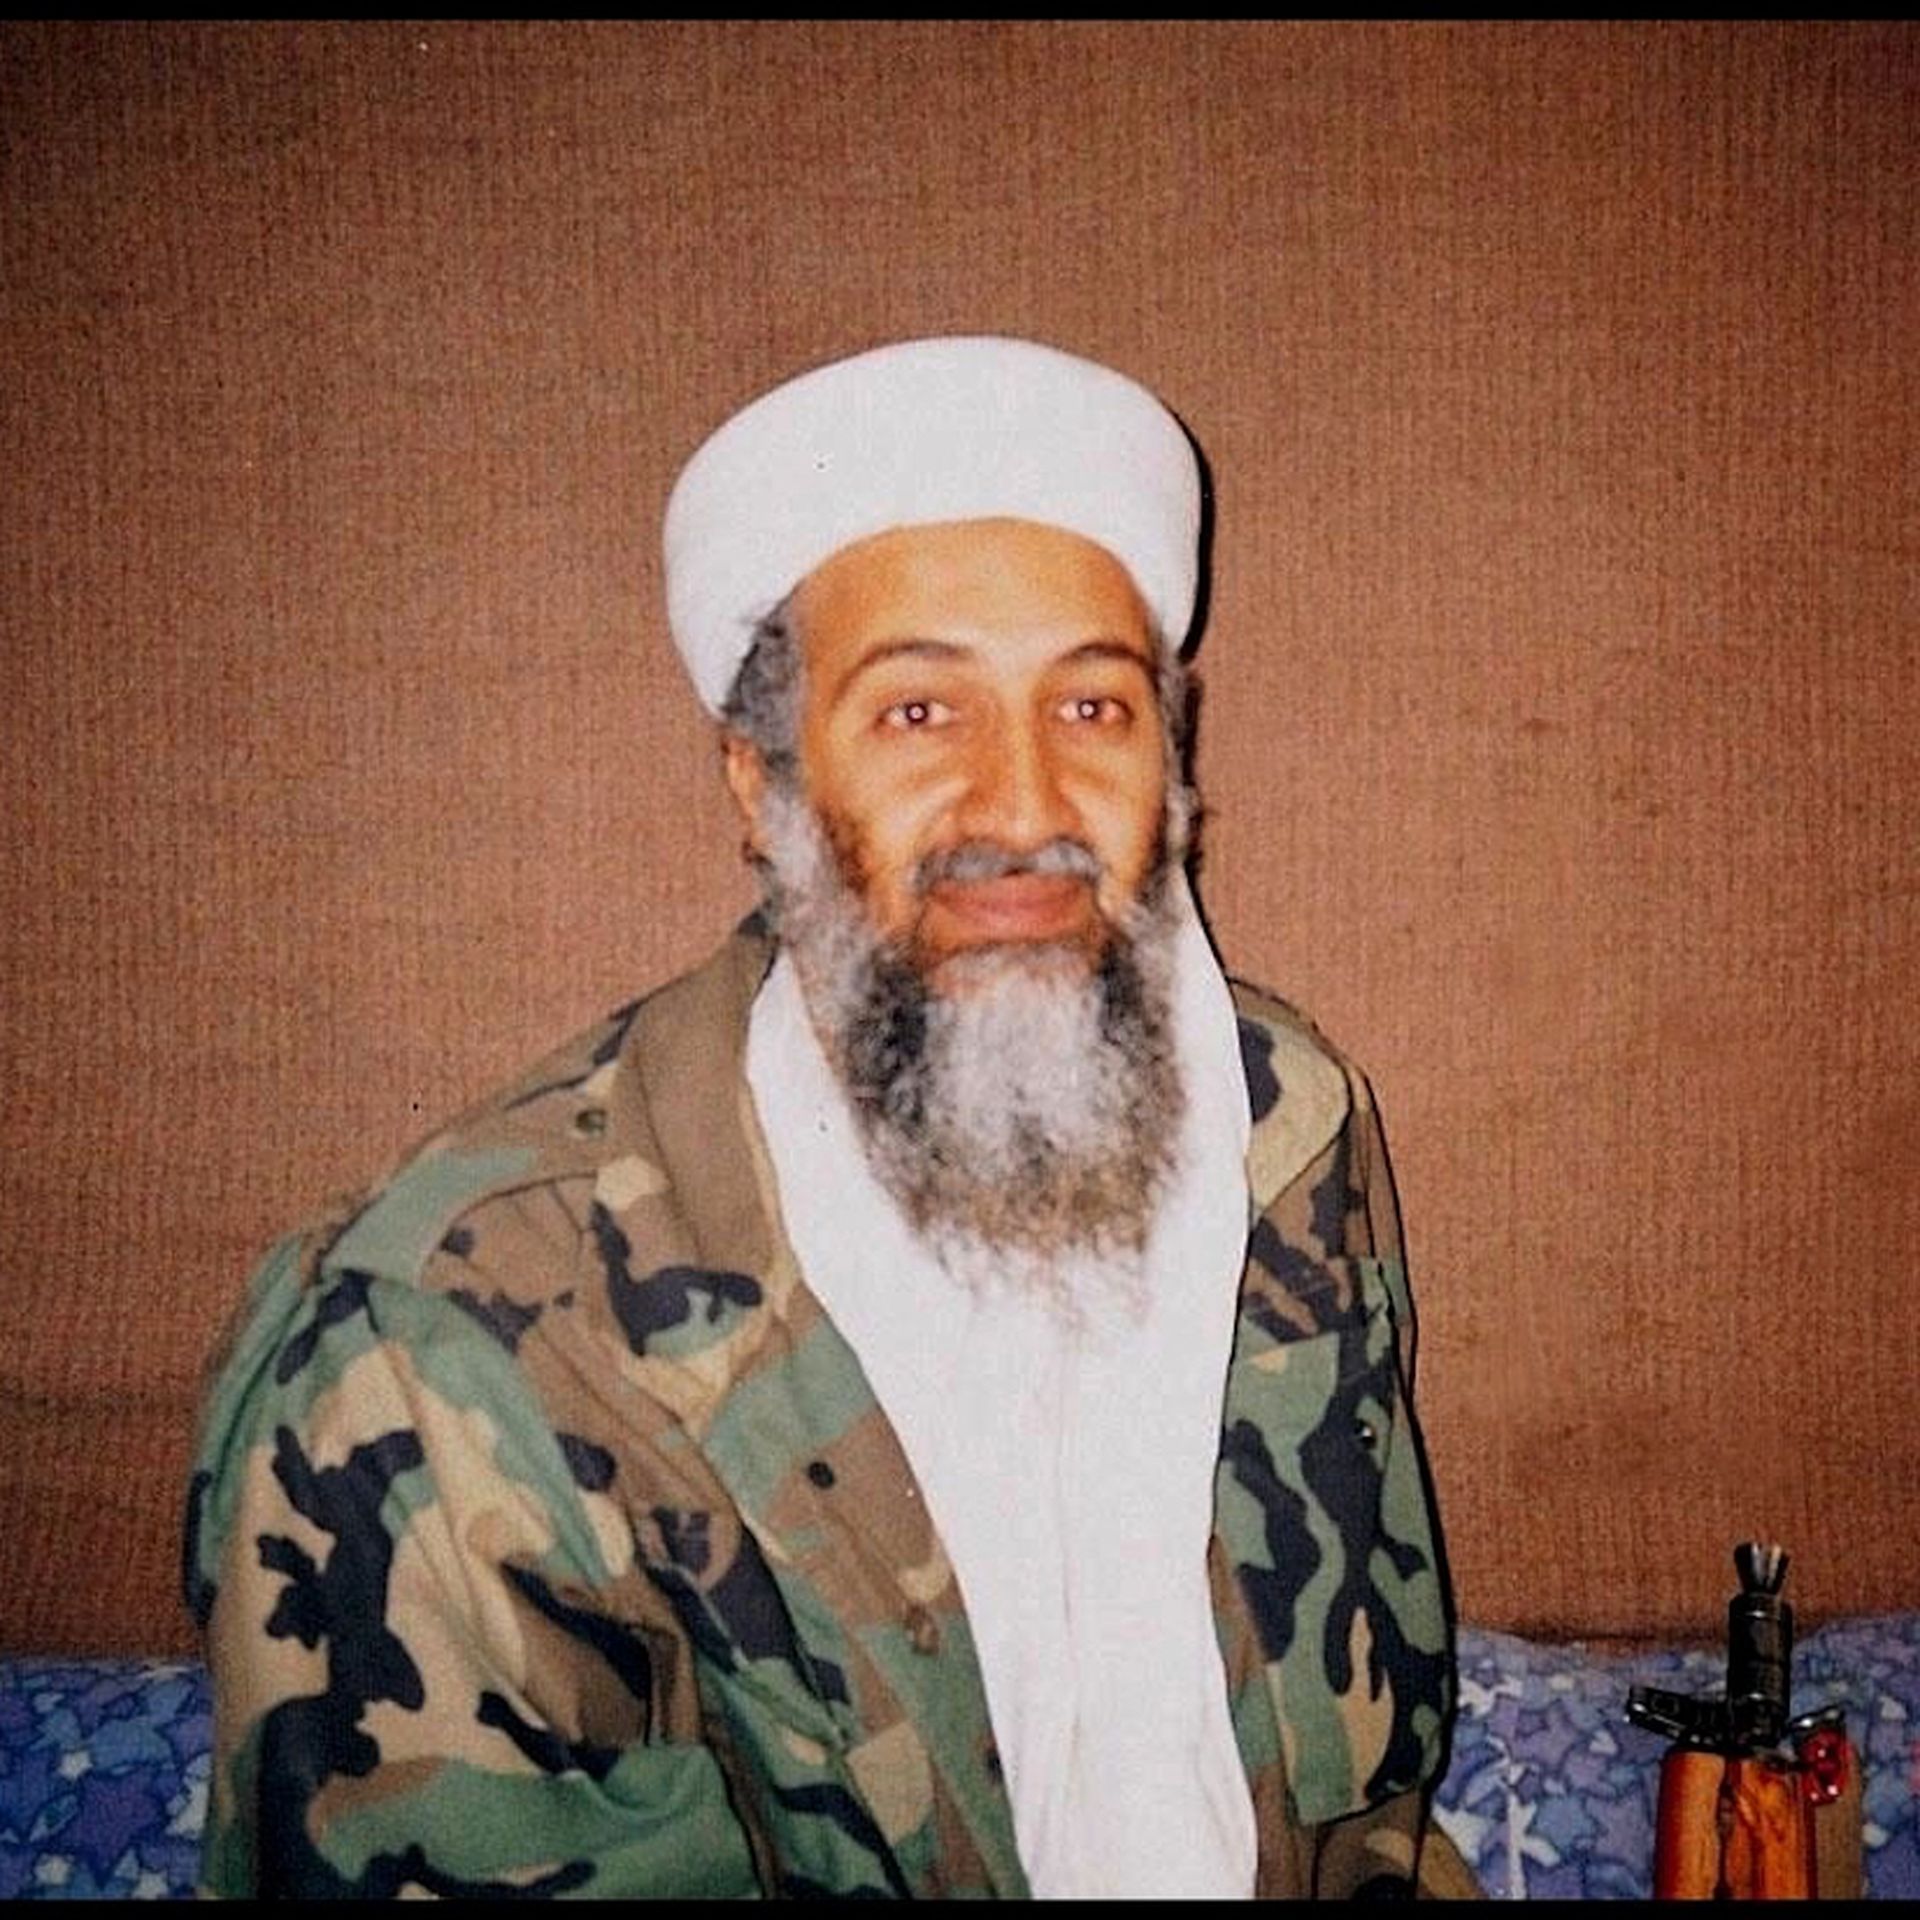 Bin Laden, No More